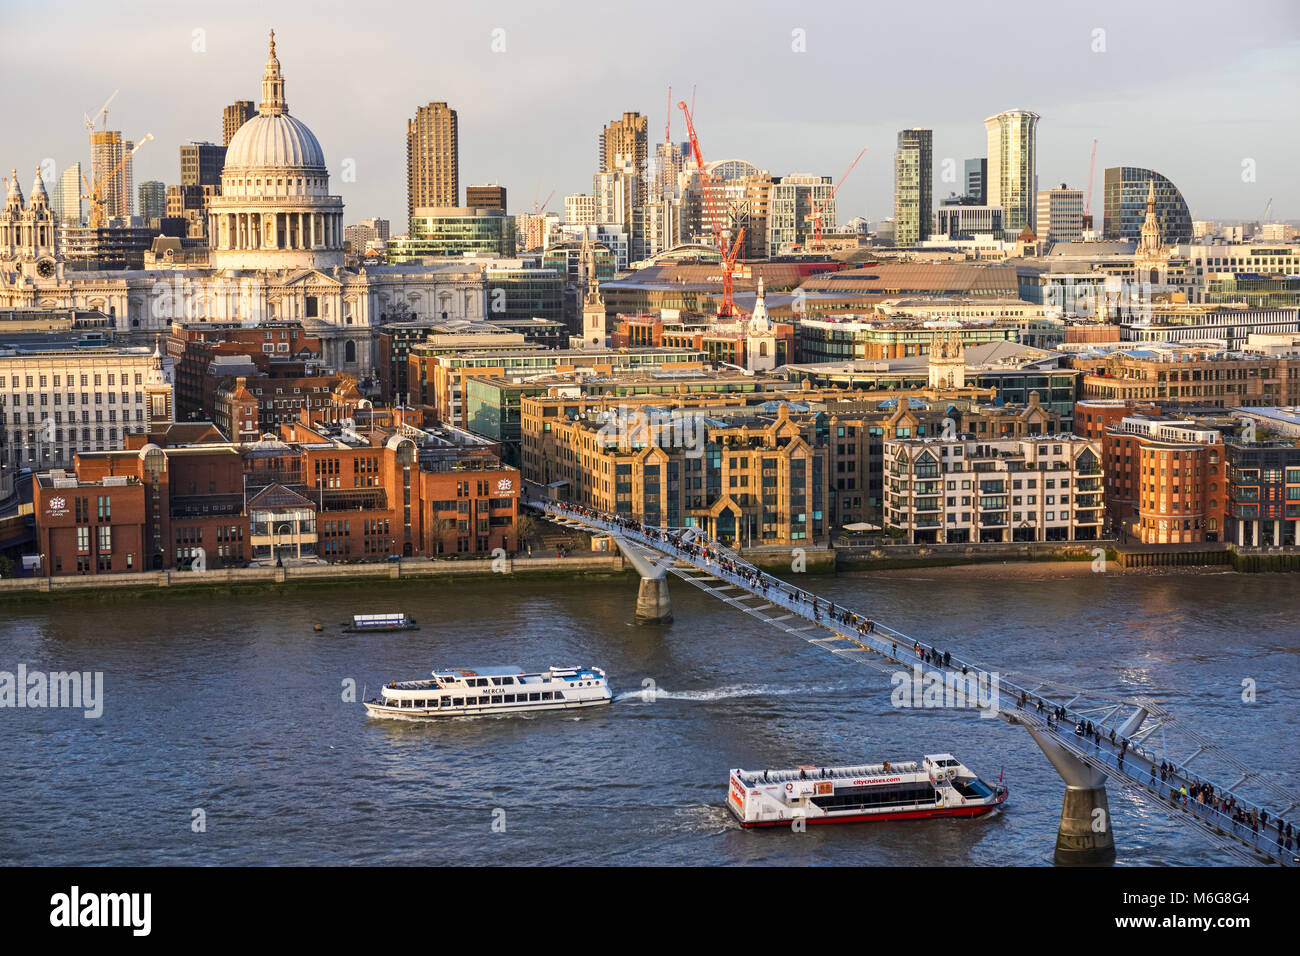 Vue panoramique sur la cathédrale Saint-Paul et les bâtiments environnants, Londres Angleterre Royaume-Uni Banque D'Images